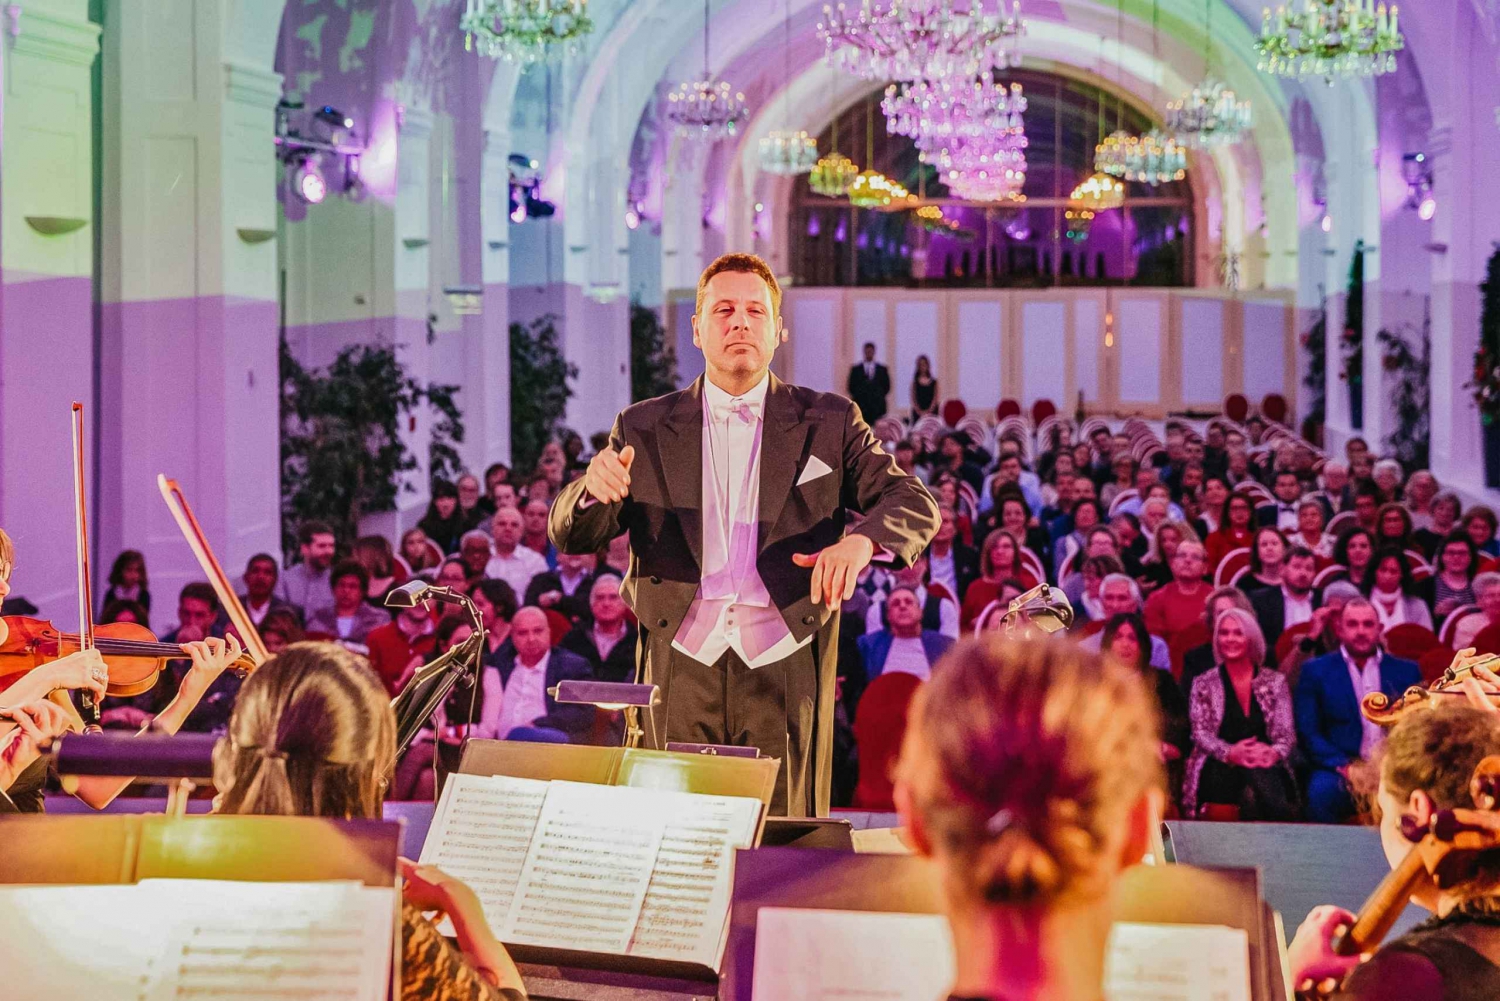 Vienne : Concert Mozart et Strauss à Schoenbrunn